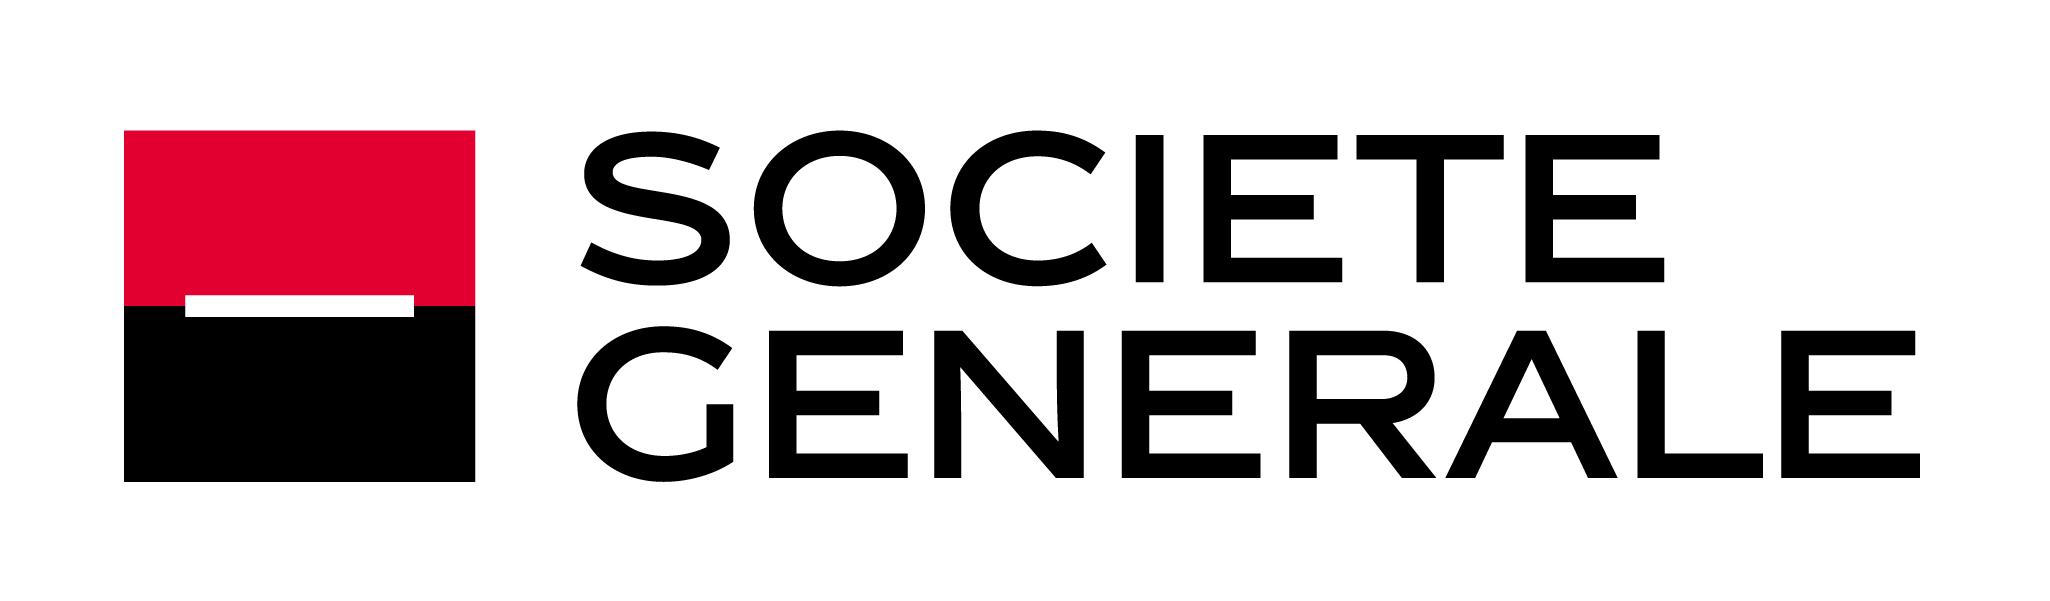 General Brokers Logo photo - 1